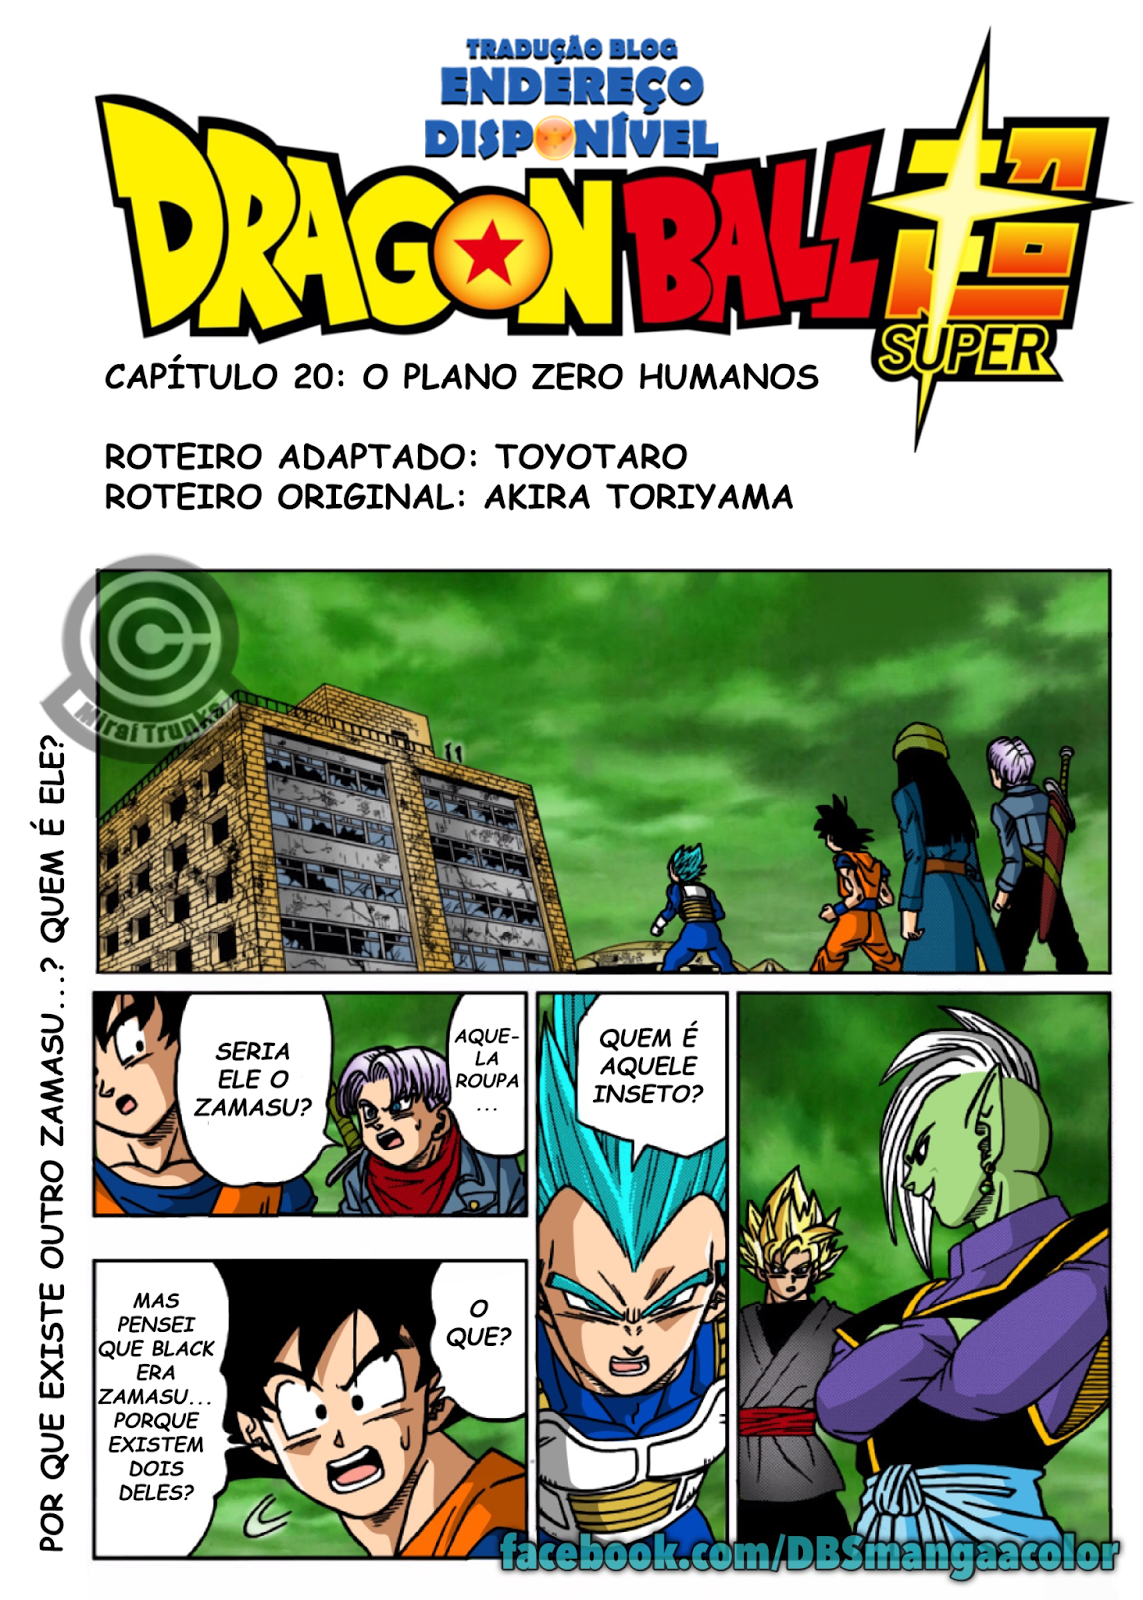 Endereço Disponível: Capítulo 16 do Mangá de Dragon Ball Super Traduzido!